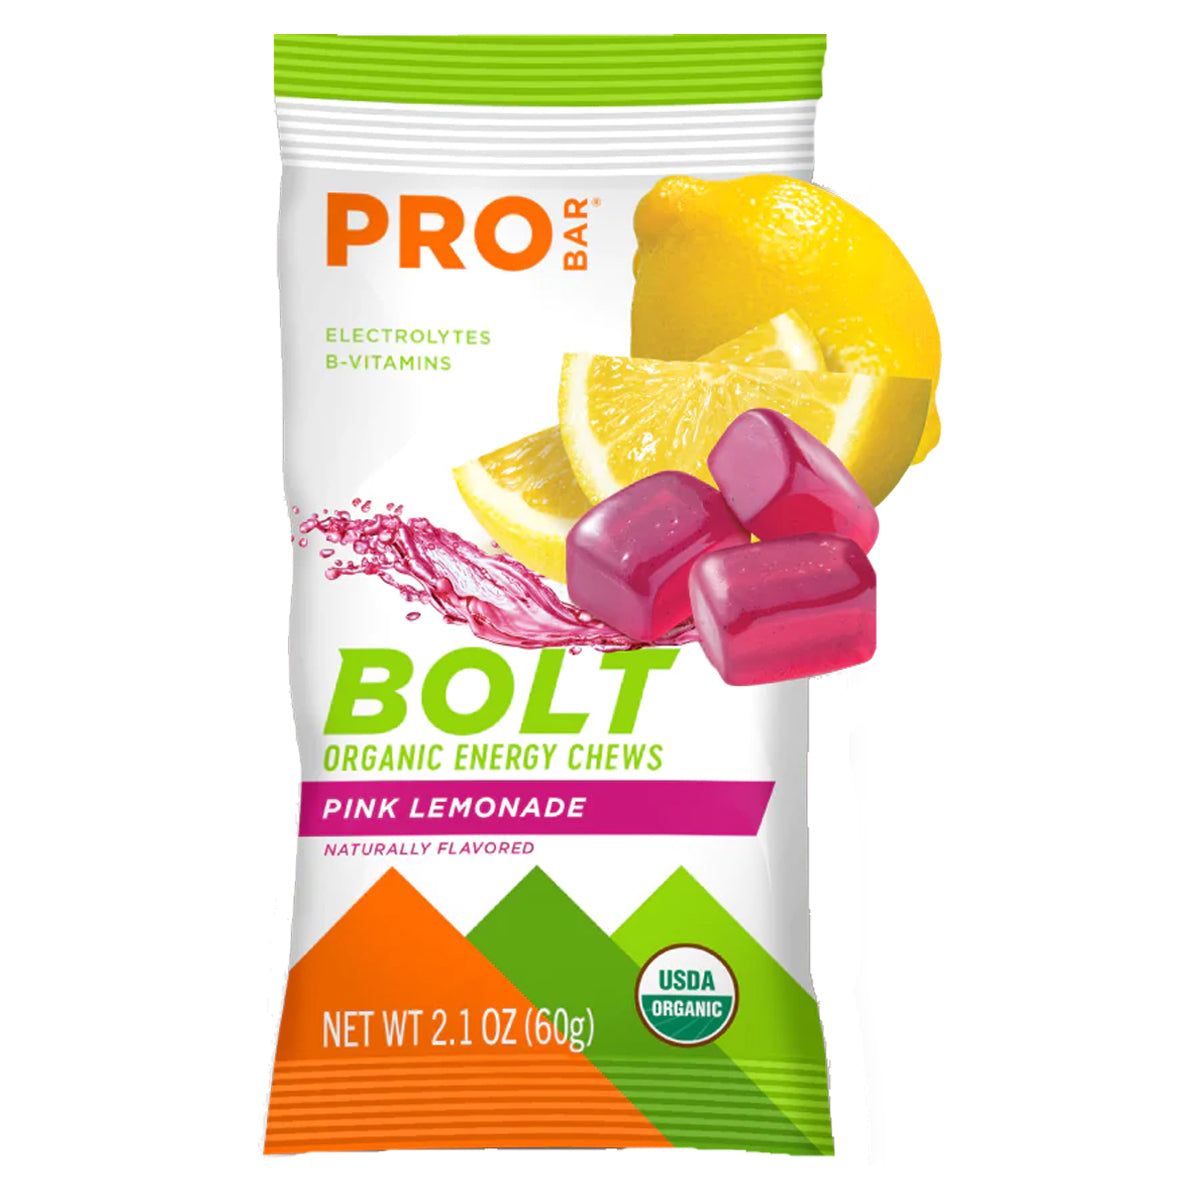 PROBAR Bolt Organic Energy Chews